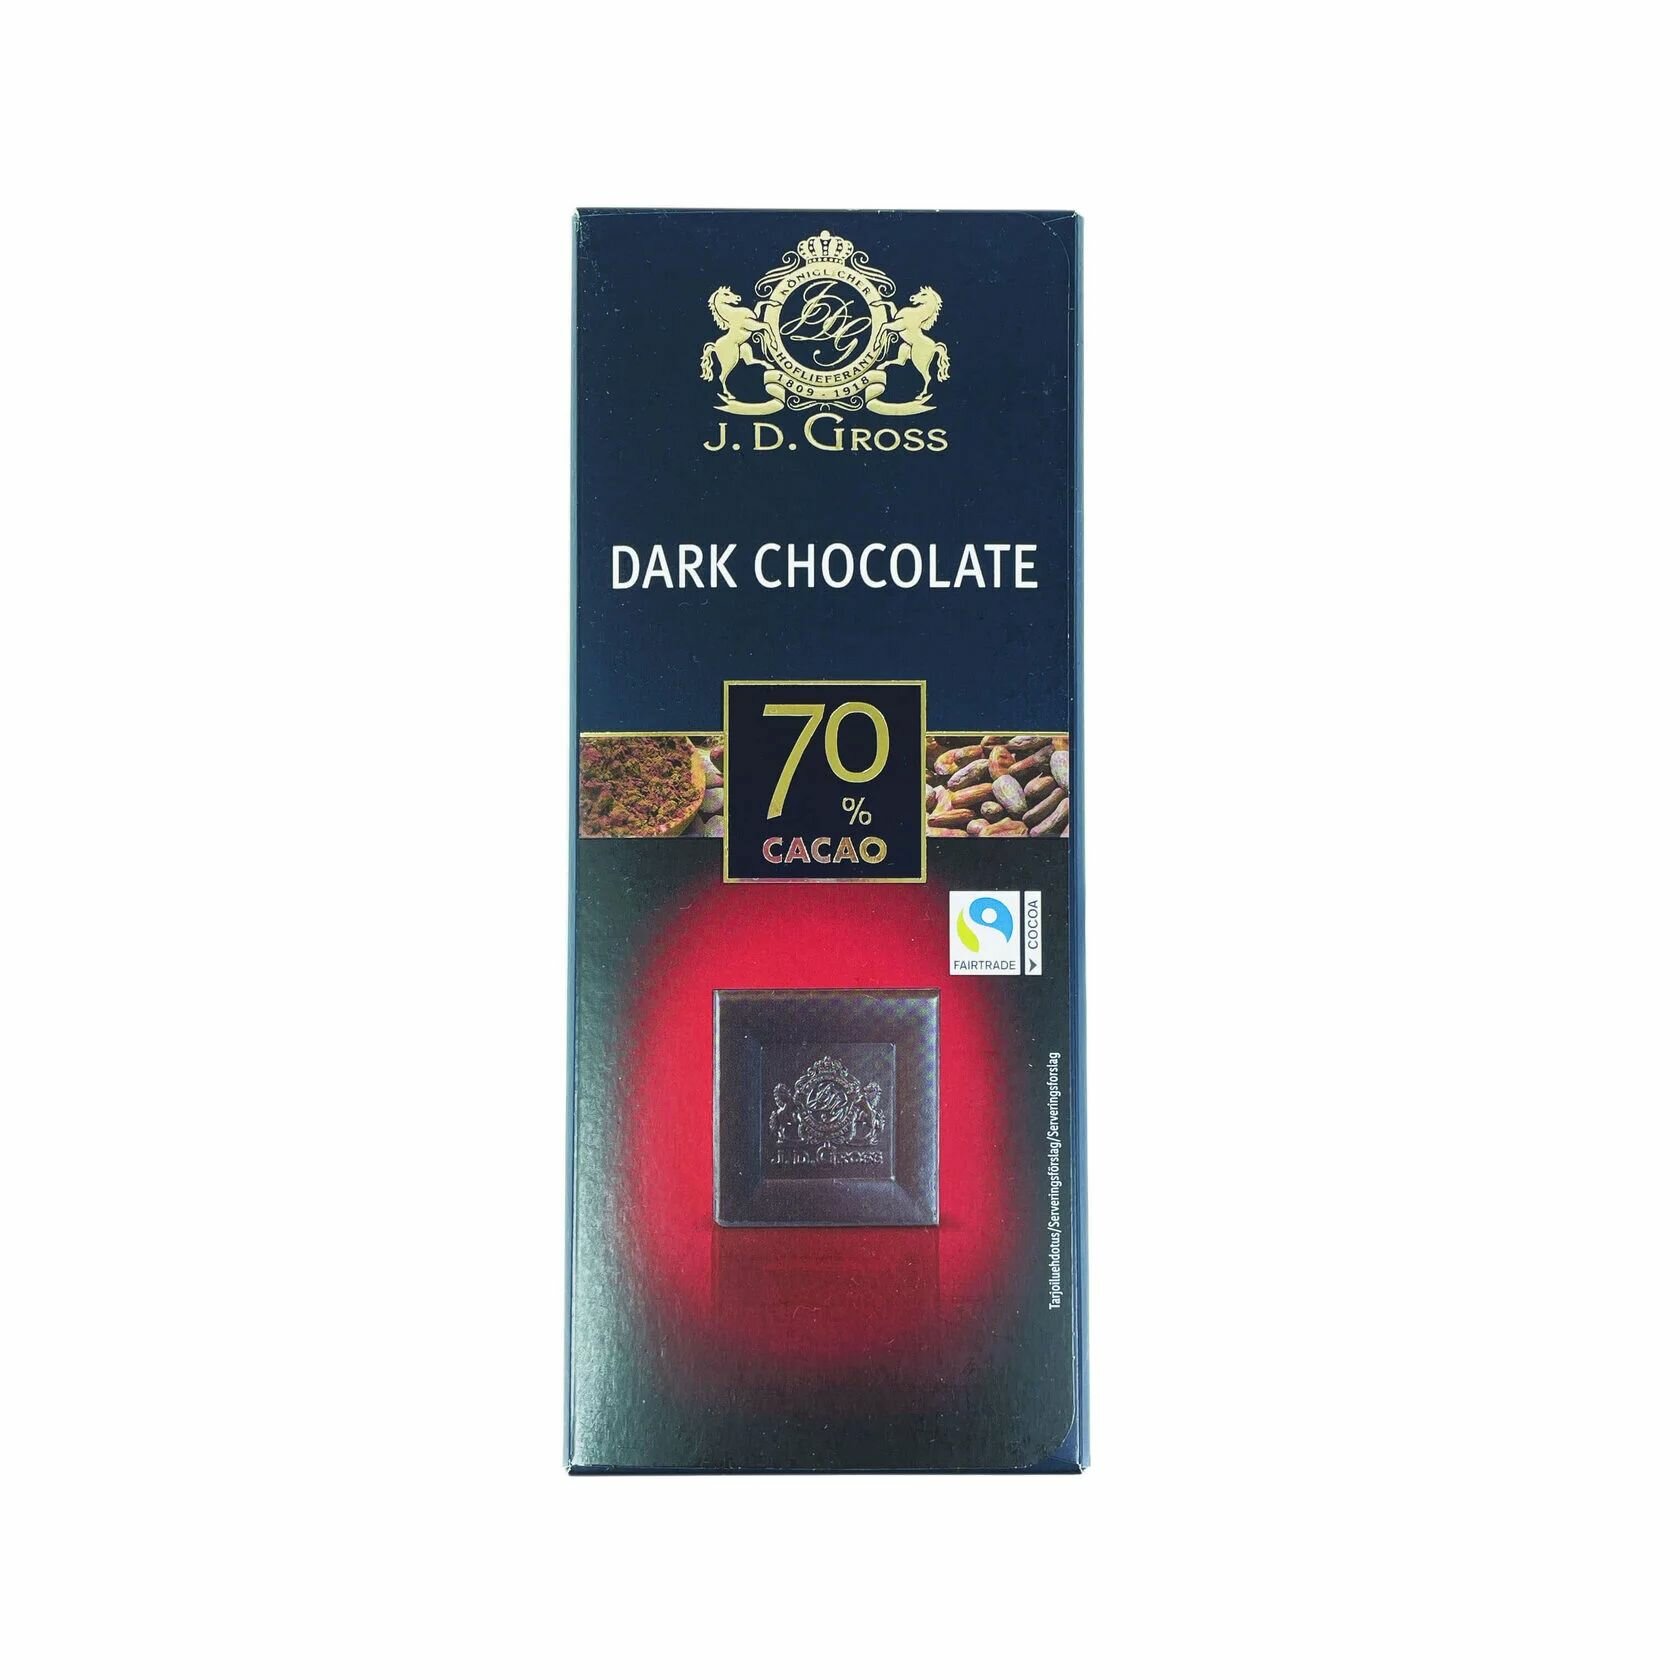 Темный шоколад, содержание какао 70%, J. D. Gross Dark Chocolate, 125гр. Германия